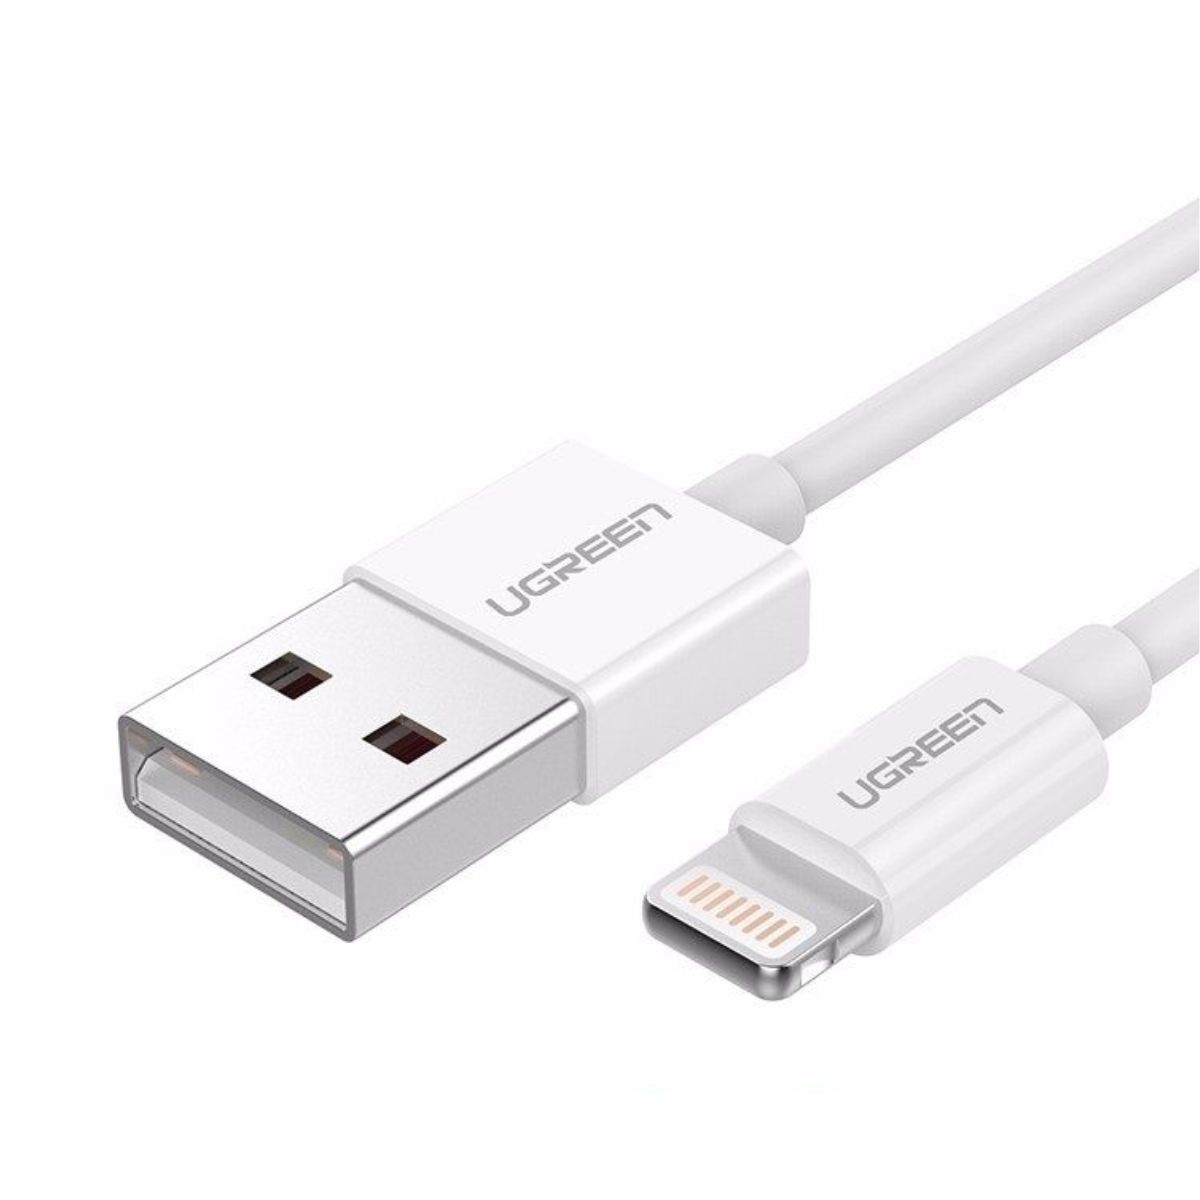 Cáp sạc nhanh 50cm USB-A Male to Lightning Ugreen US155, 80313 màu trắng, hỗ trợ sạc nhanh 2,4A